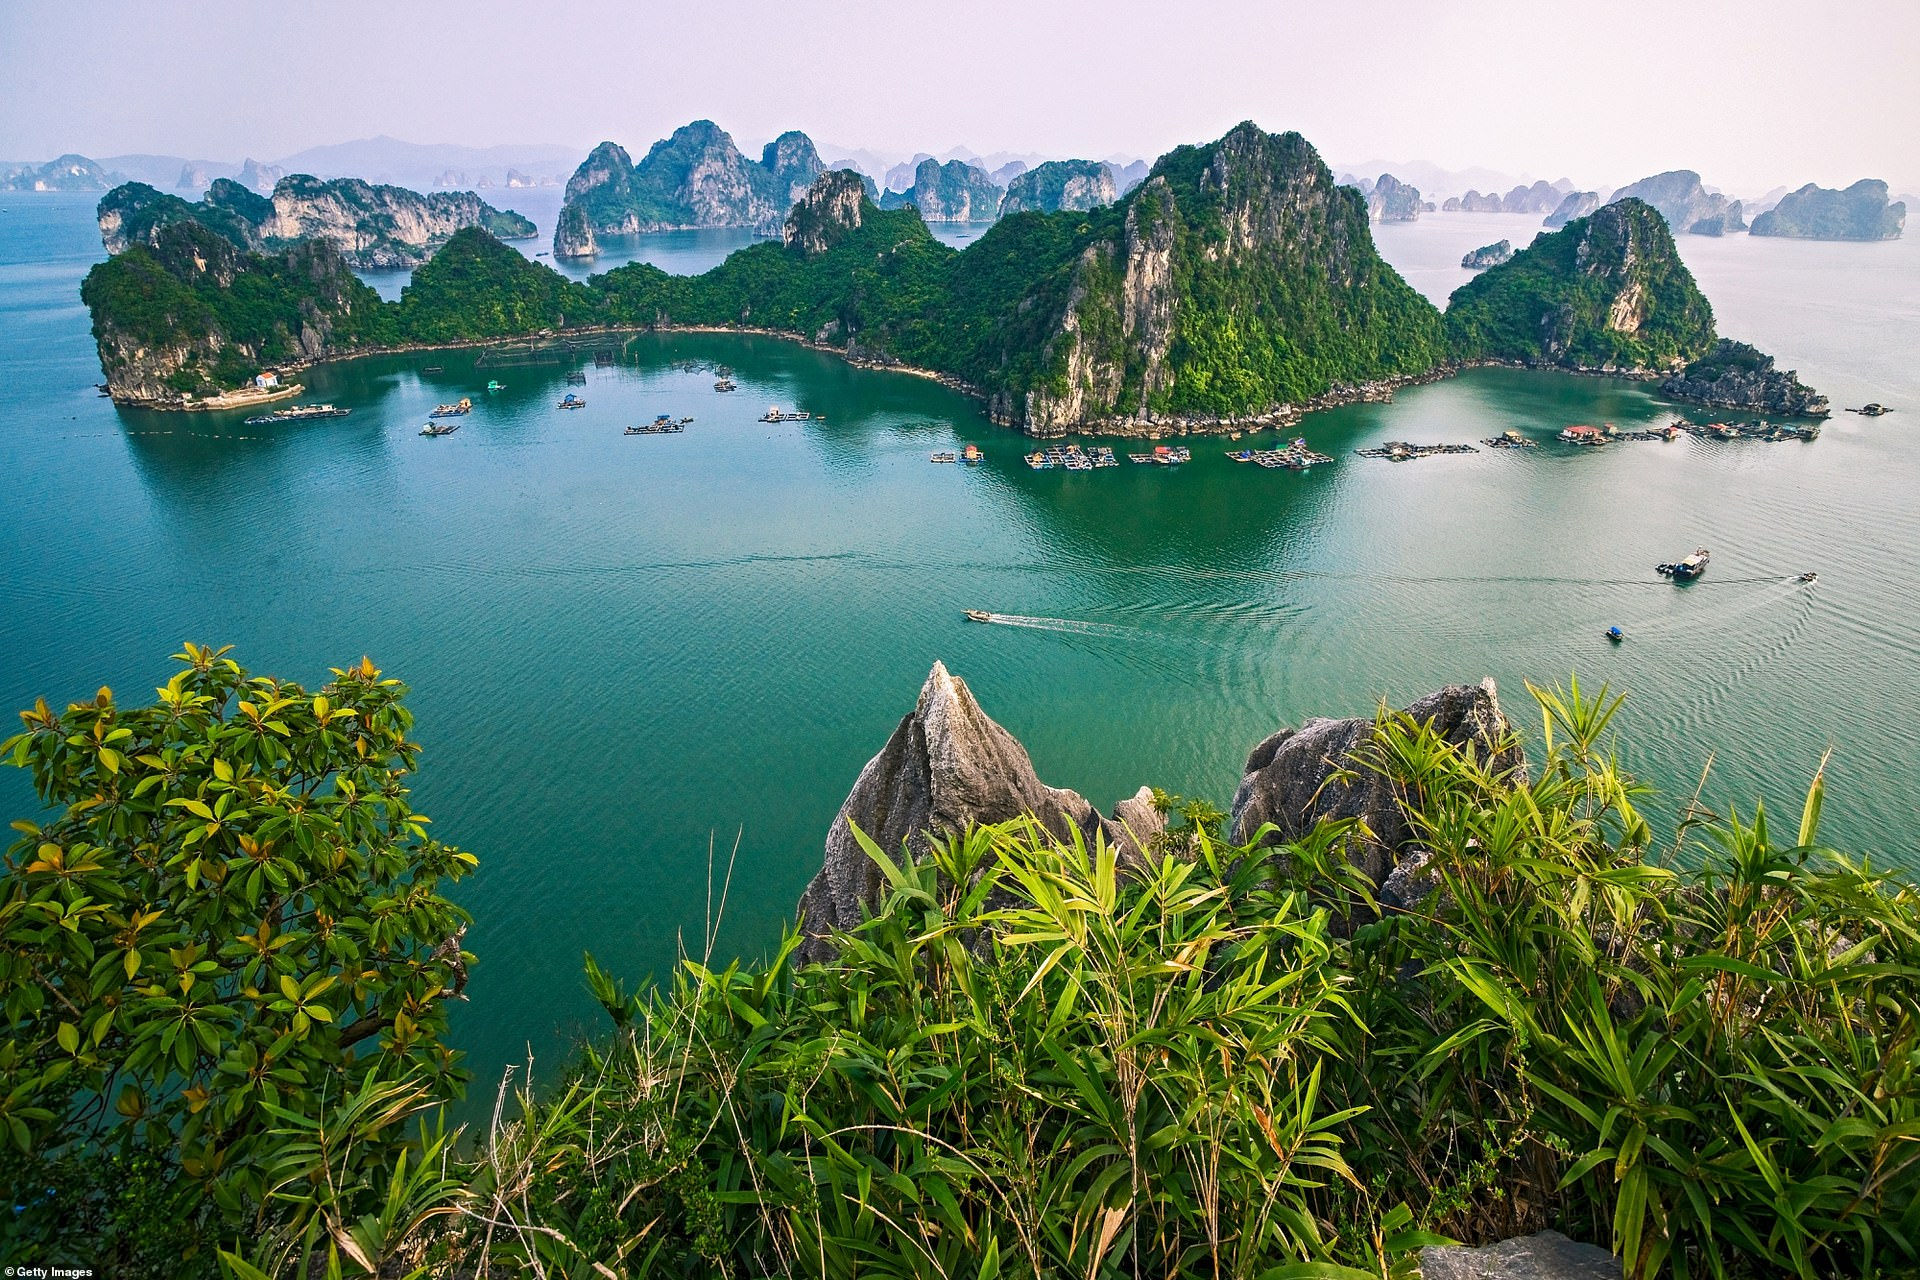 Vịnh Hạ Long, tỉnh Quảng Ninh nằm trong vịnh Bắc Bộ có hơn 1.600 hòn đảo lớn nhỏ và các tảng núi đá vôi, thường được coi là vịnh đẹp nhất trên thế giới.